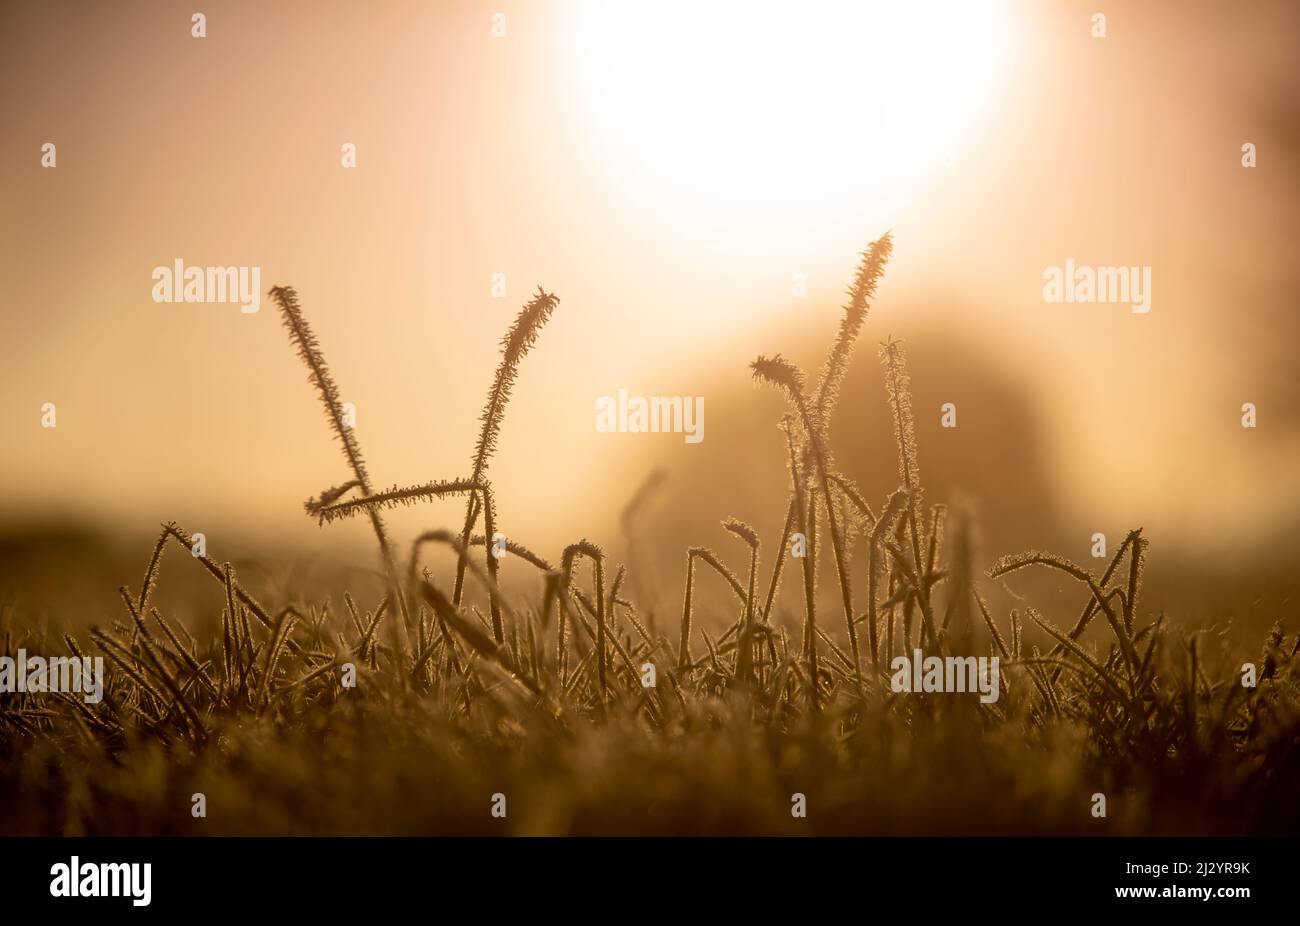 Frozen grass on field in sunlight, Etzel, East Friesland, Lower Saxony, Germany, Europe Stock Photo